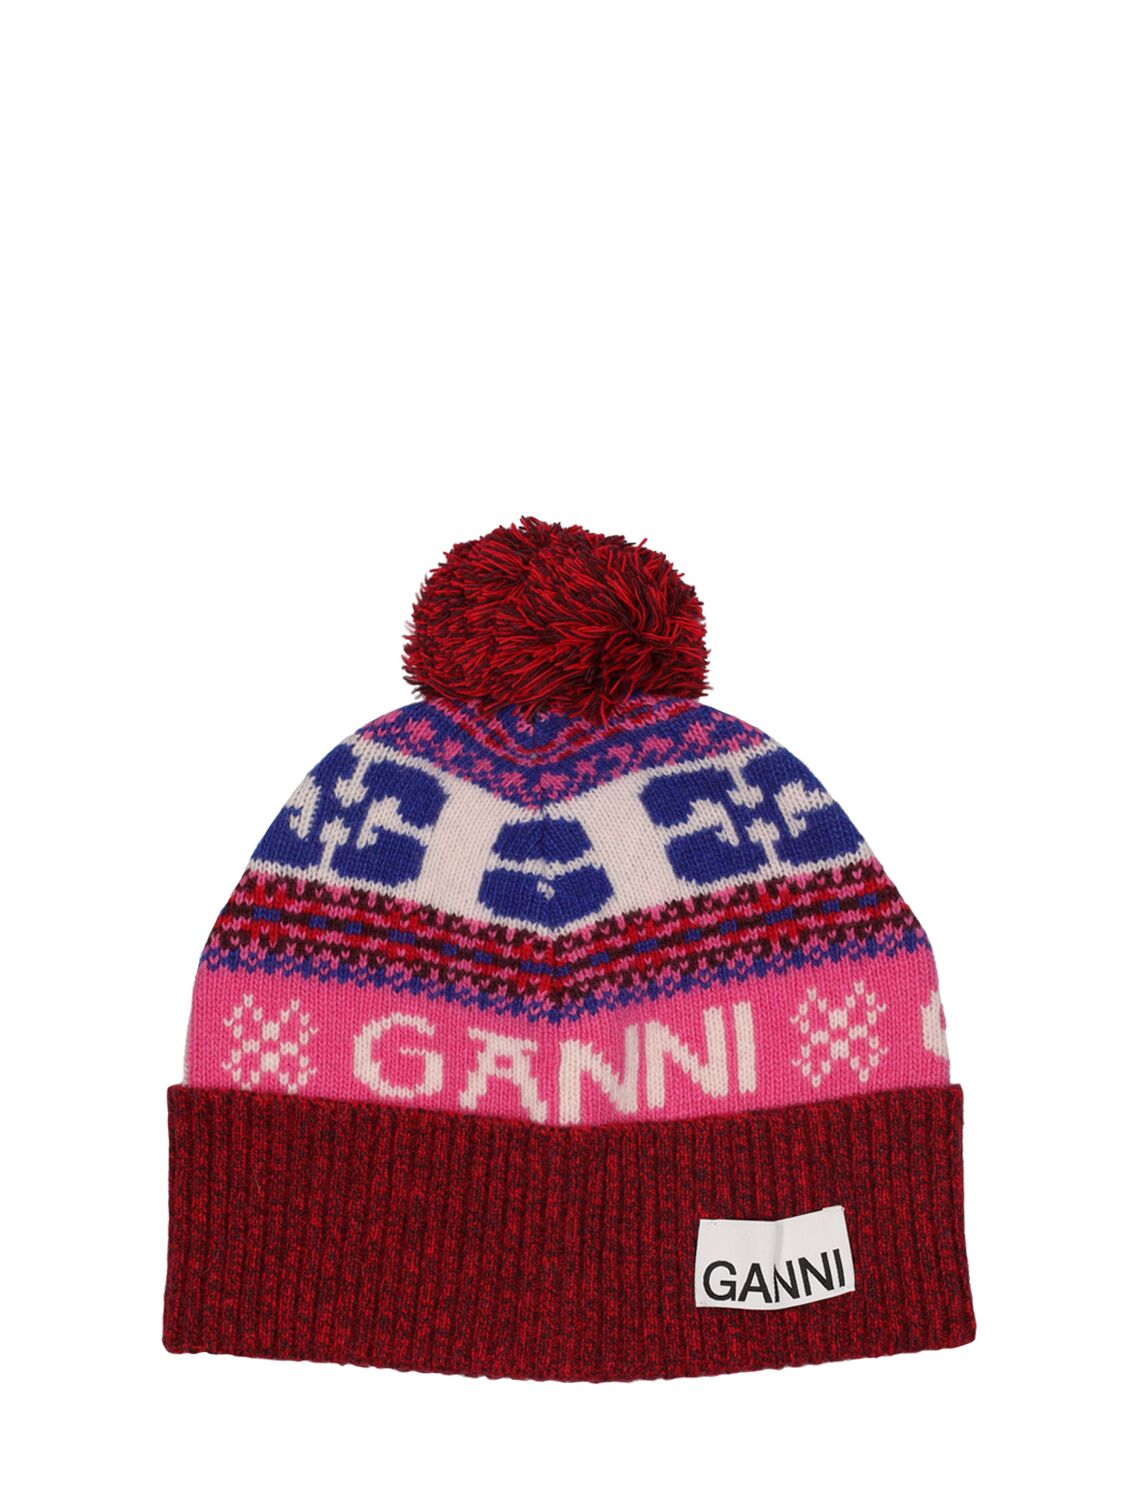 Ganni Multicoloured Graphic Wool Beanie Hat In Bunt